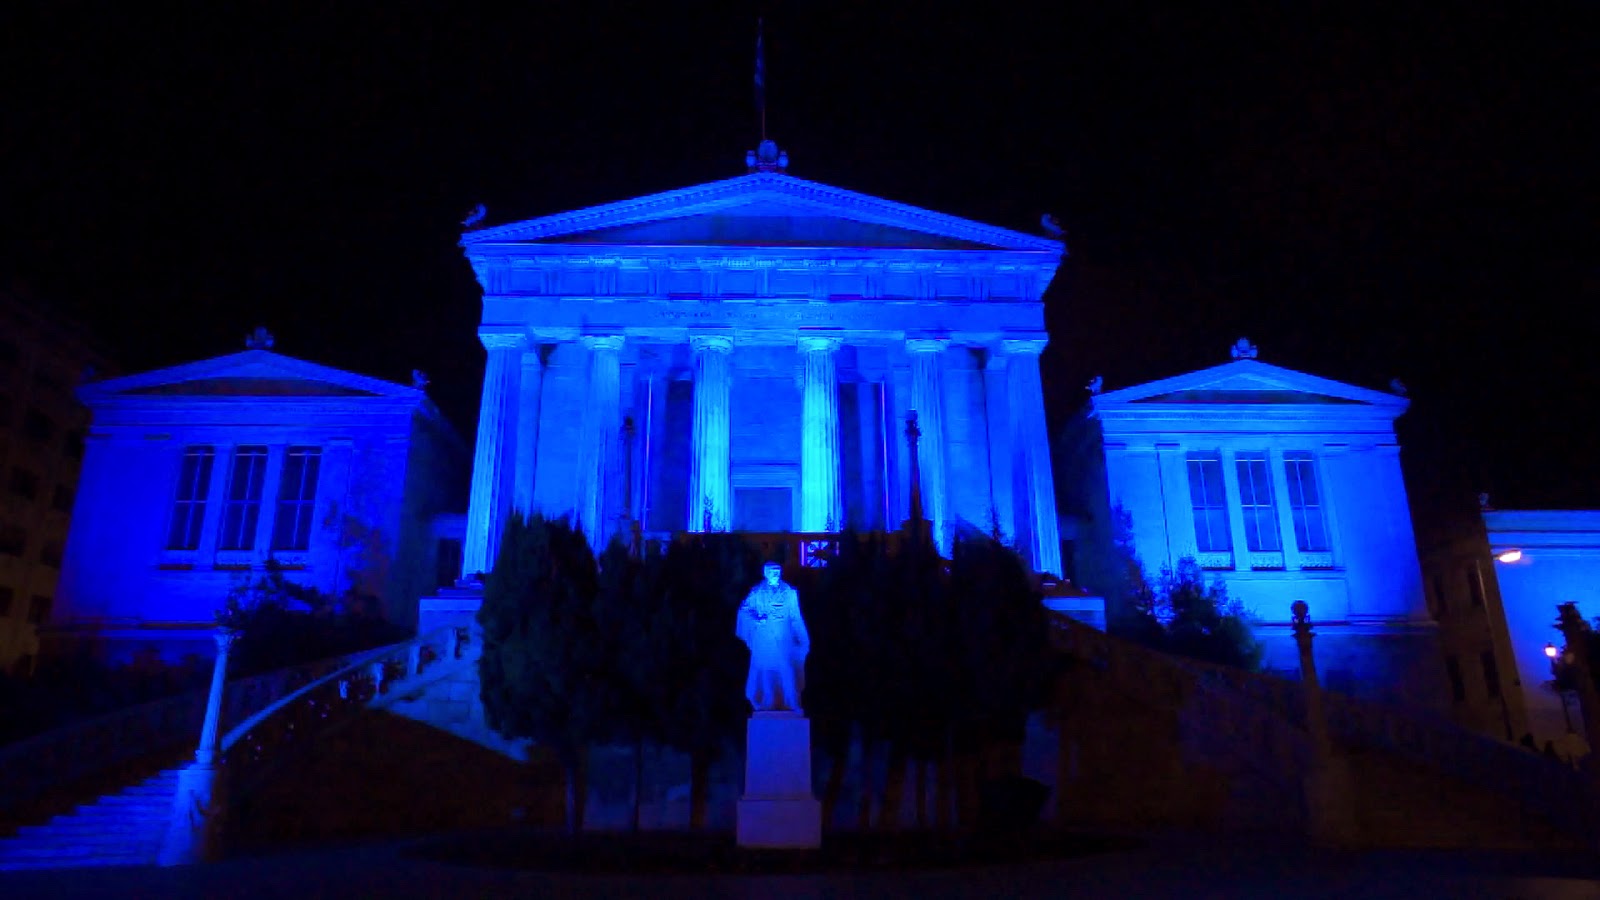 Φωταγώγηση του Πανεπιστημίου Αθηνών, της Ακαδημίας Αθηνών και της Εθνικής Βιβλιοθήκης με μπλε χρώμα στα πλαίσια εορτασμού της Παγκόσμιας Ημέρας Διαβήτη